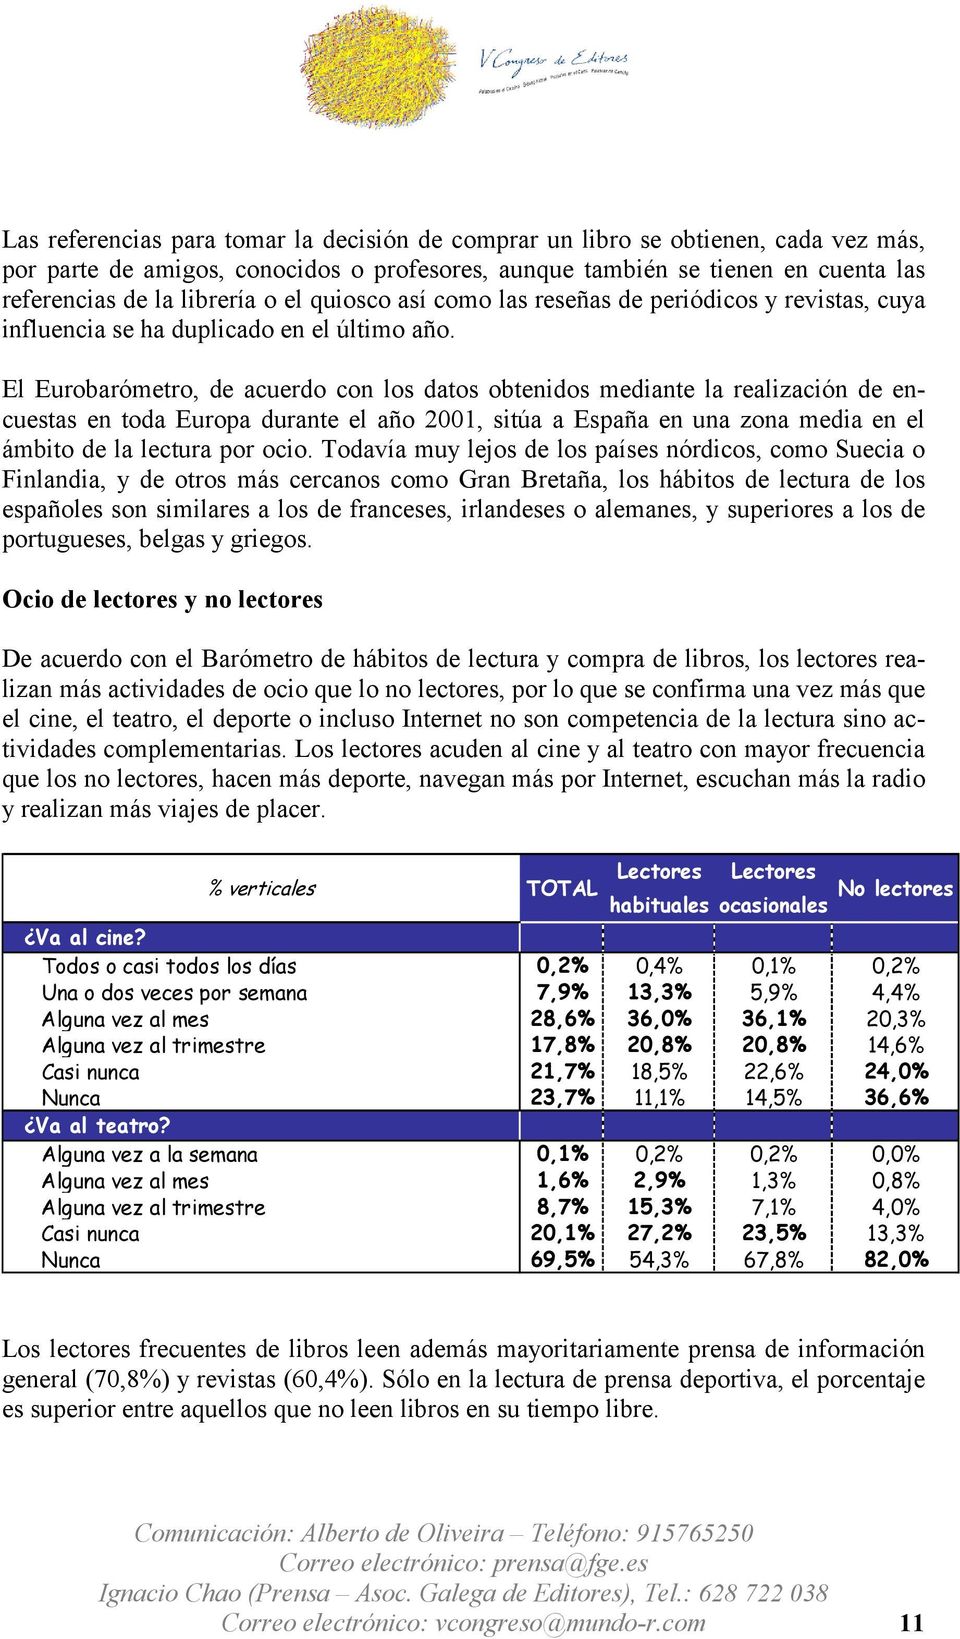 El Eurobarómetro, de acuerdo con los datos obtenidos mediante la realización de encuestas en toda Europa durante el año 2001, sitúa a España en una zona media en el ámbito de la lectura por ocio.